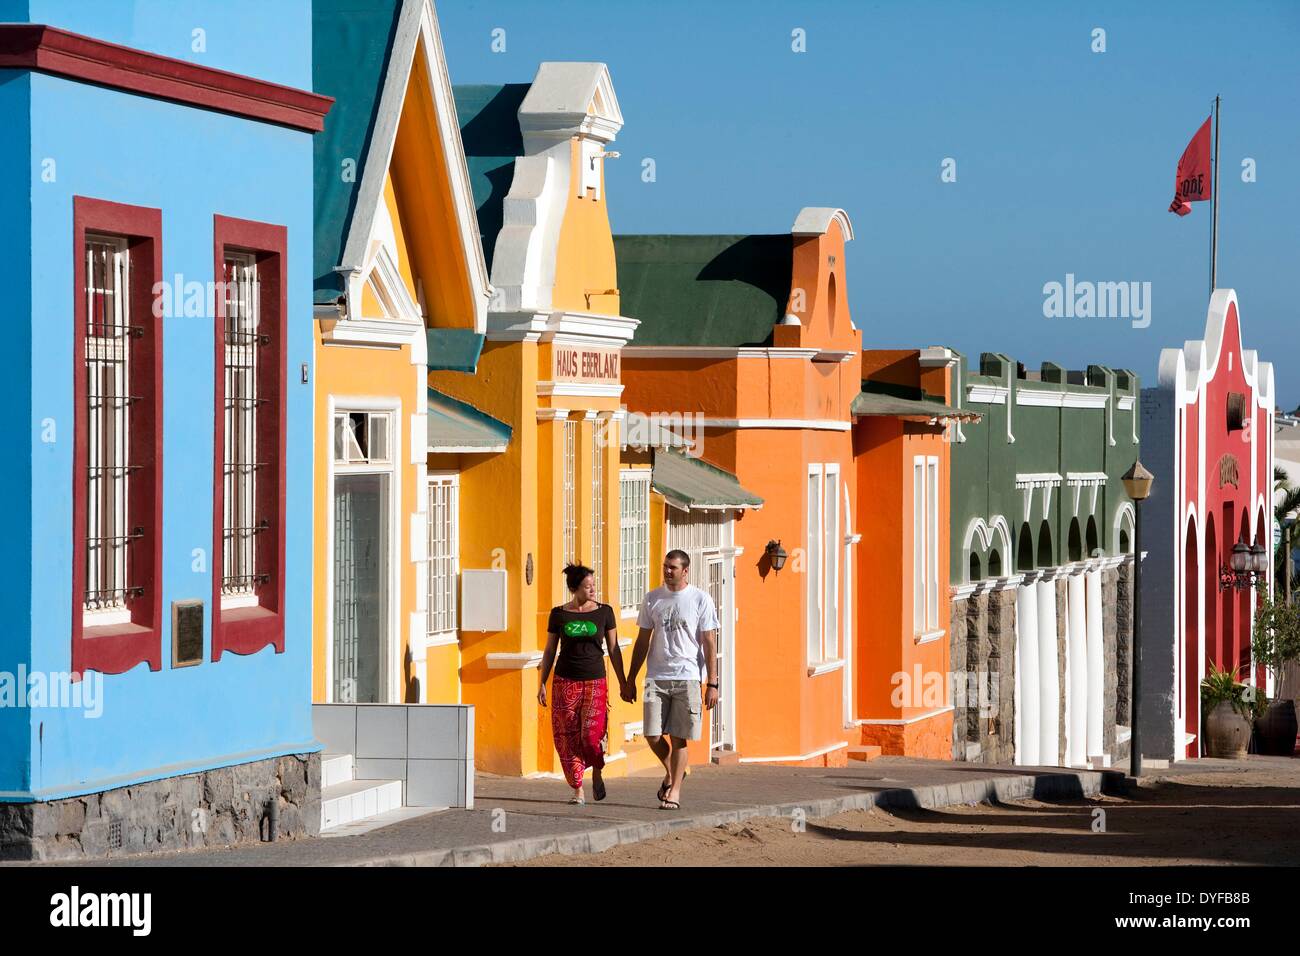 Fassades colorati di case lungo una strada di Luederitz nel sud della Namibia, 10 gennaio 2011. La città fu fondata dai commercianti di tabacco da Brema in Germania. Foto: Tom Schulze - nessun filo SERVICE - Foto Stock